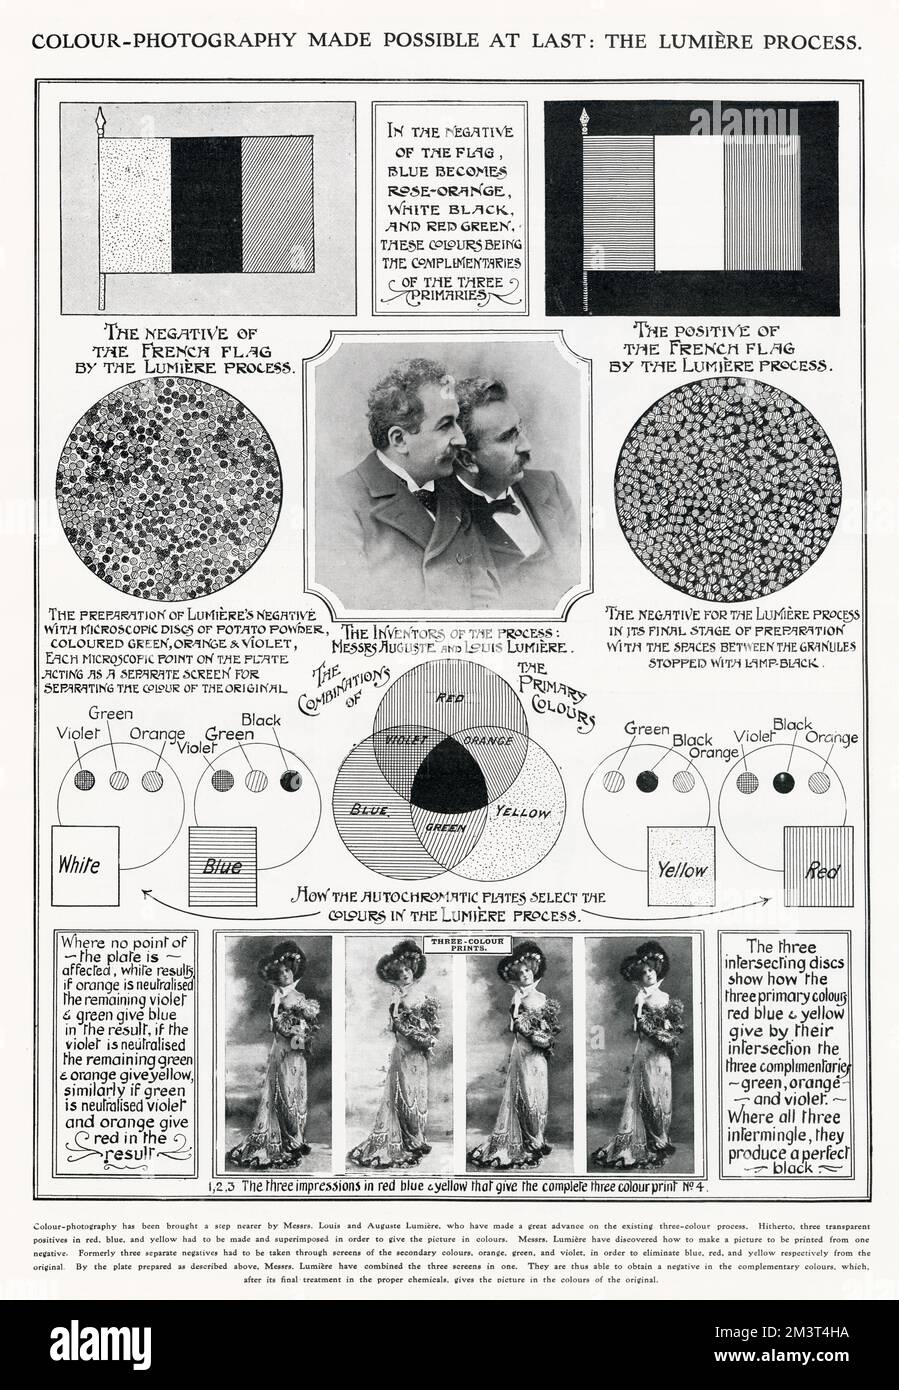 Autochrome Lumiere war ein früheres Farbfotografieverfahren, das 1903 von den Brüdern Lumiere, Louis und Auguste, in Frankreich patentiert und erstmals 1907 vermarktet wurde. Die Verwendung von autochromatischen Platten durch die Zubereitung von Lumière-Negativ mit mikroskopisch kleinen Kartoffelpulver, grün, orange und violett, könnte zur Trennung der Folien für das farbige Original verwendet werden. Stockfoto